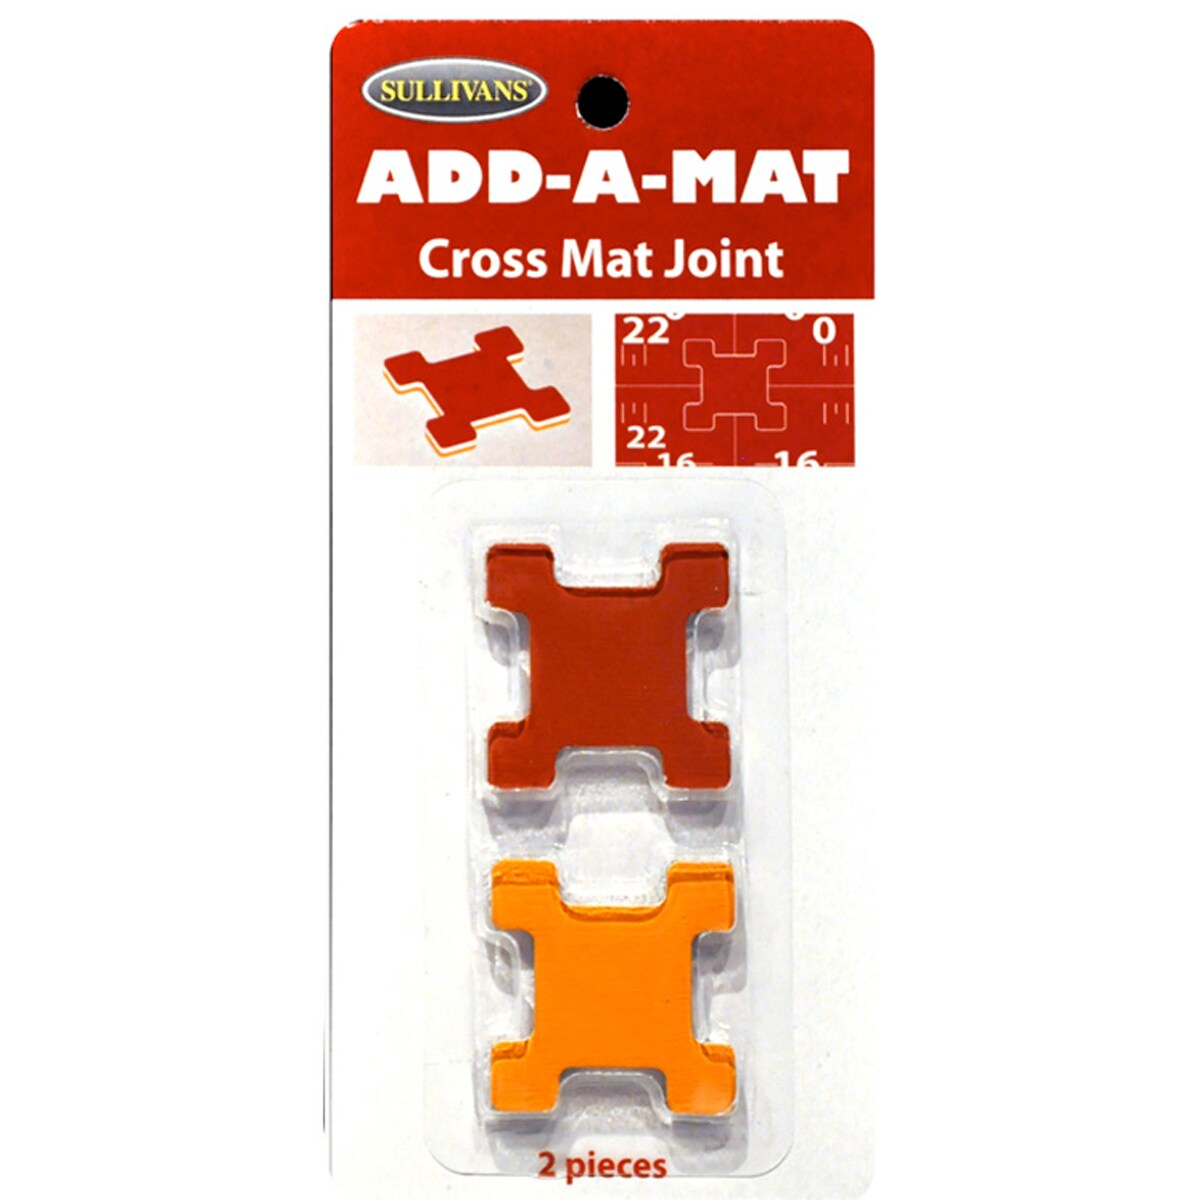 Add-A-Mat Cross Joints